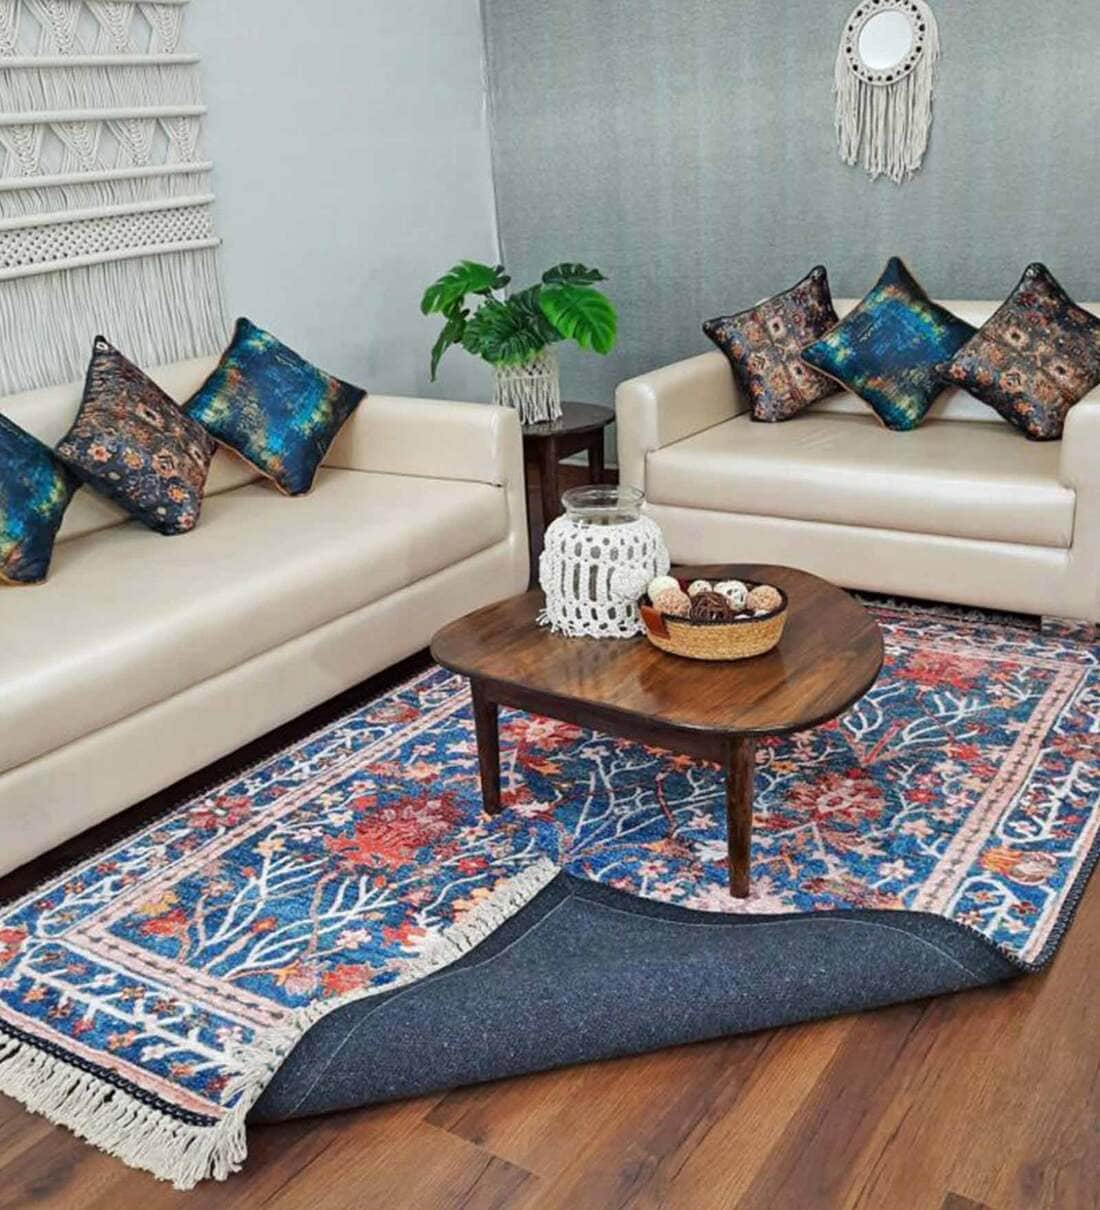 Avioni Home Floor Mats in Beautiful Traditional Persian Design